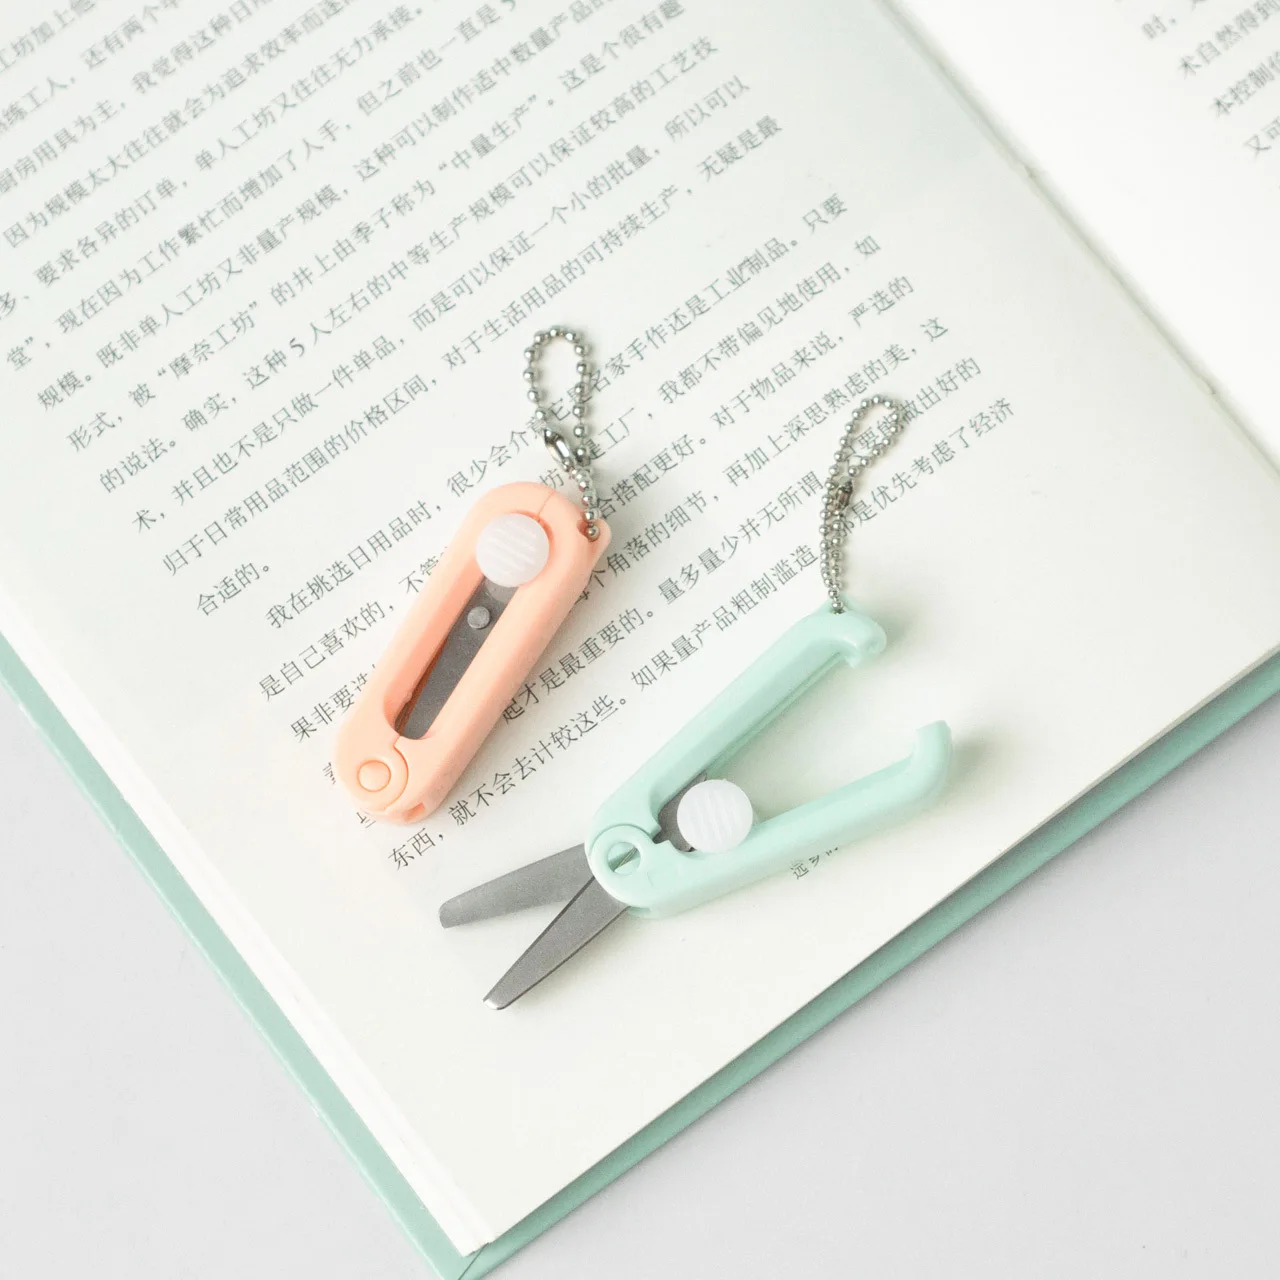  Leriton 12 Sets Mini Folding Scissors with Retractable